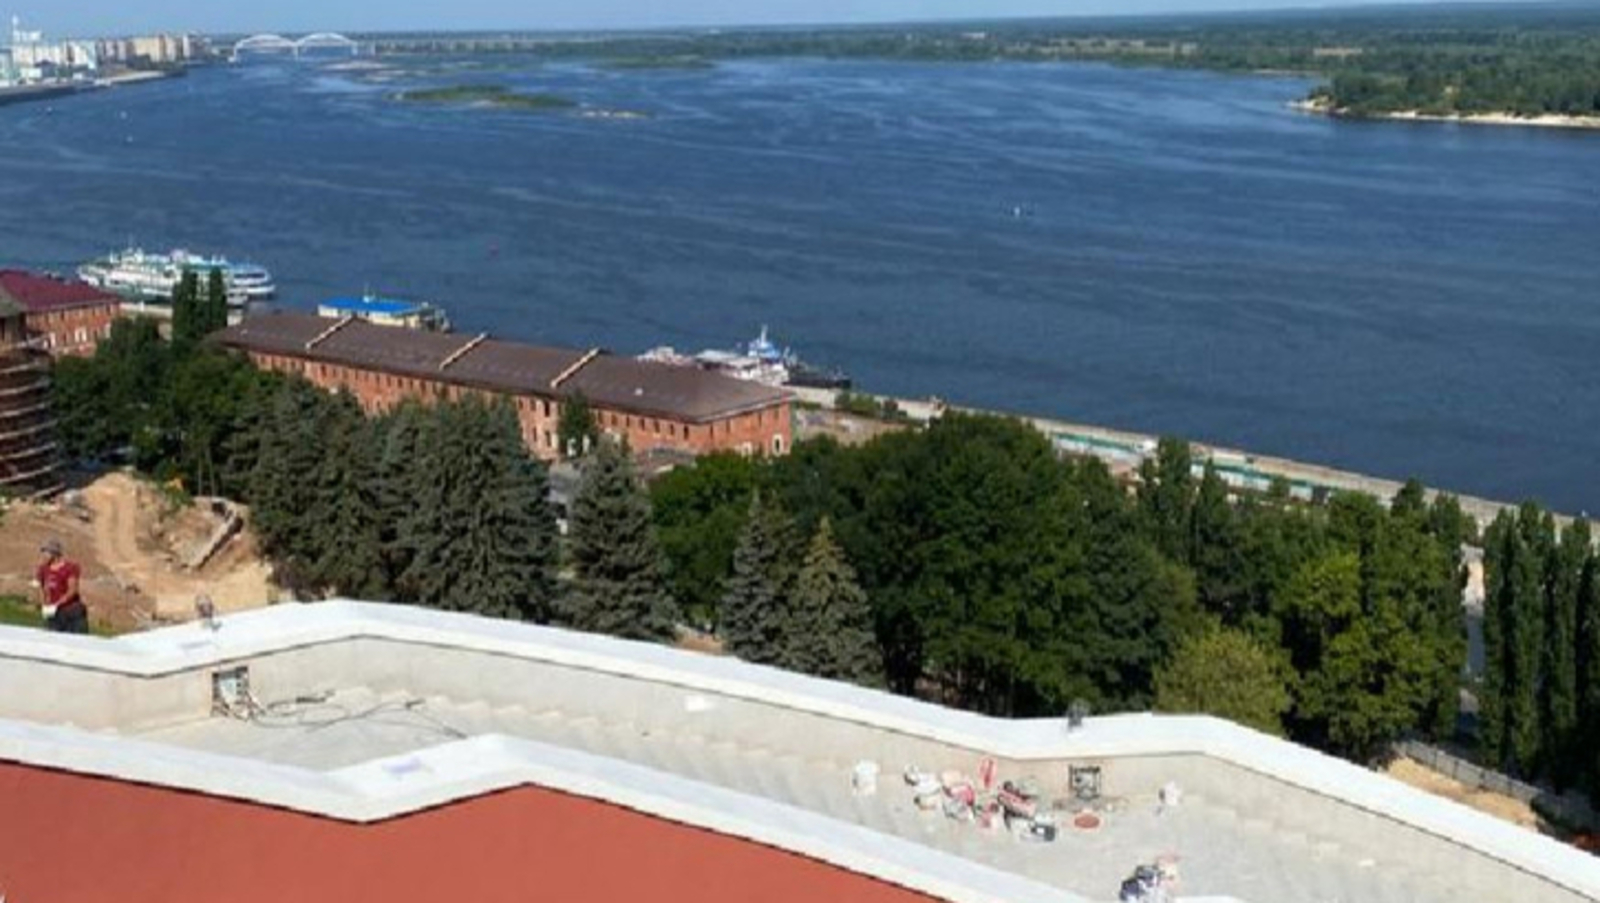 Нижний Новгород продолжает подготовку к масштабному событию